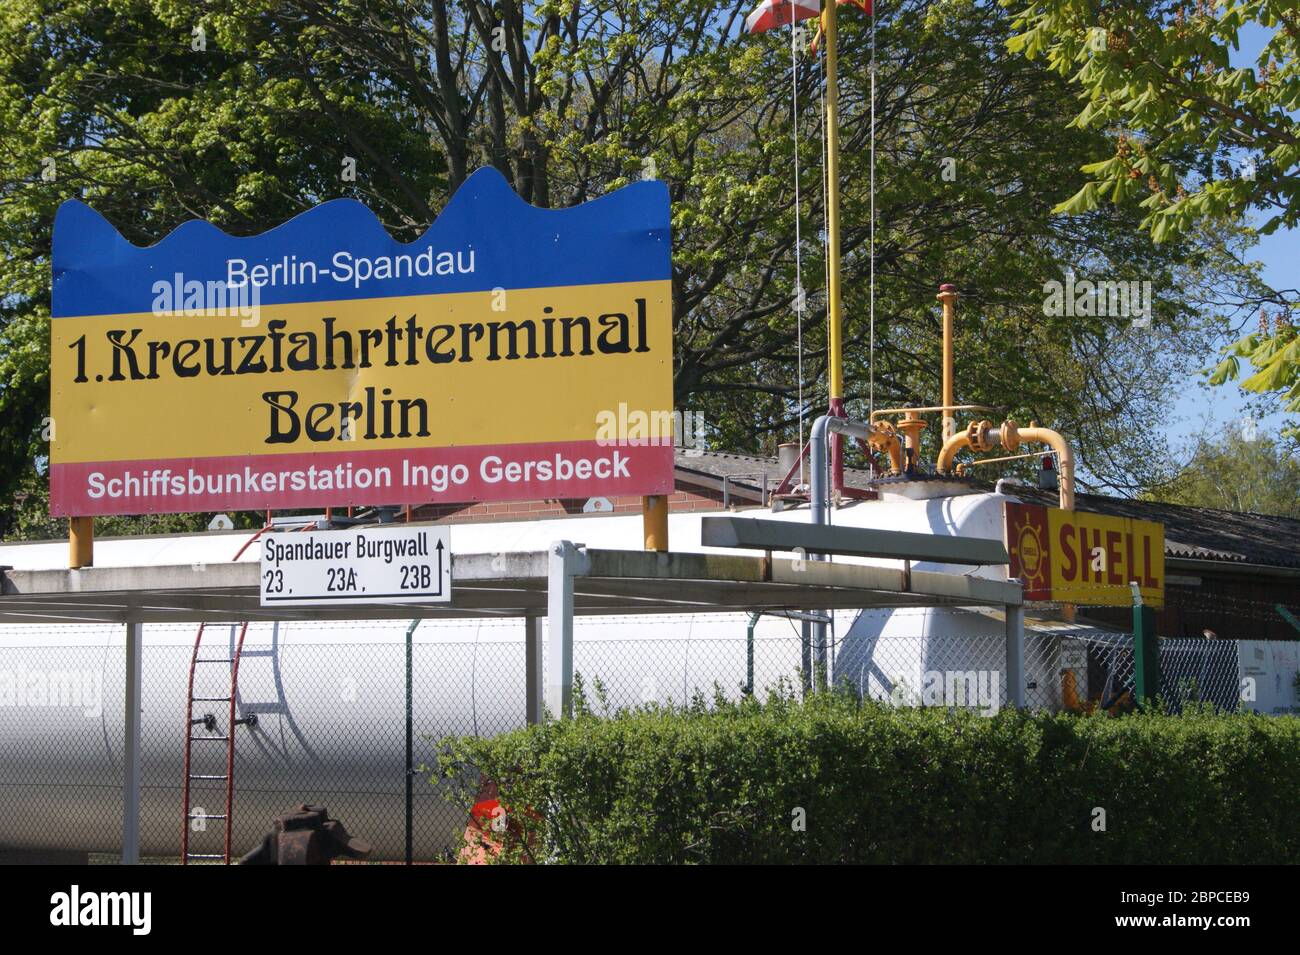 Die Anlegestelle in Berlin-Spandau für Flusskreuzfahrten auf der Havel Stock Photo